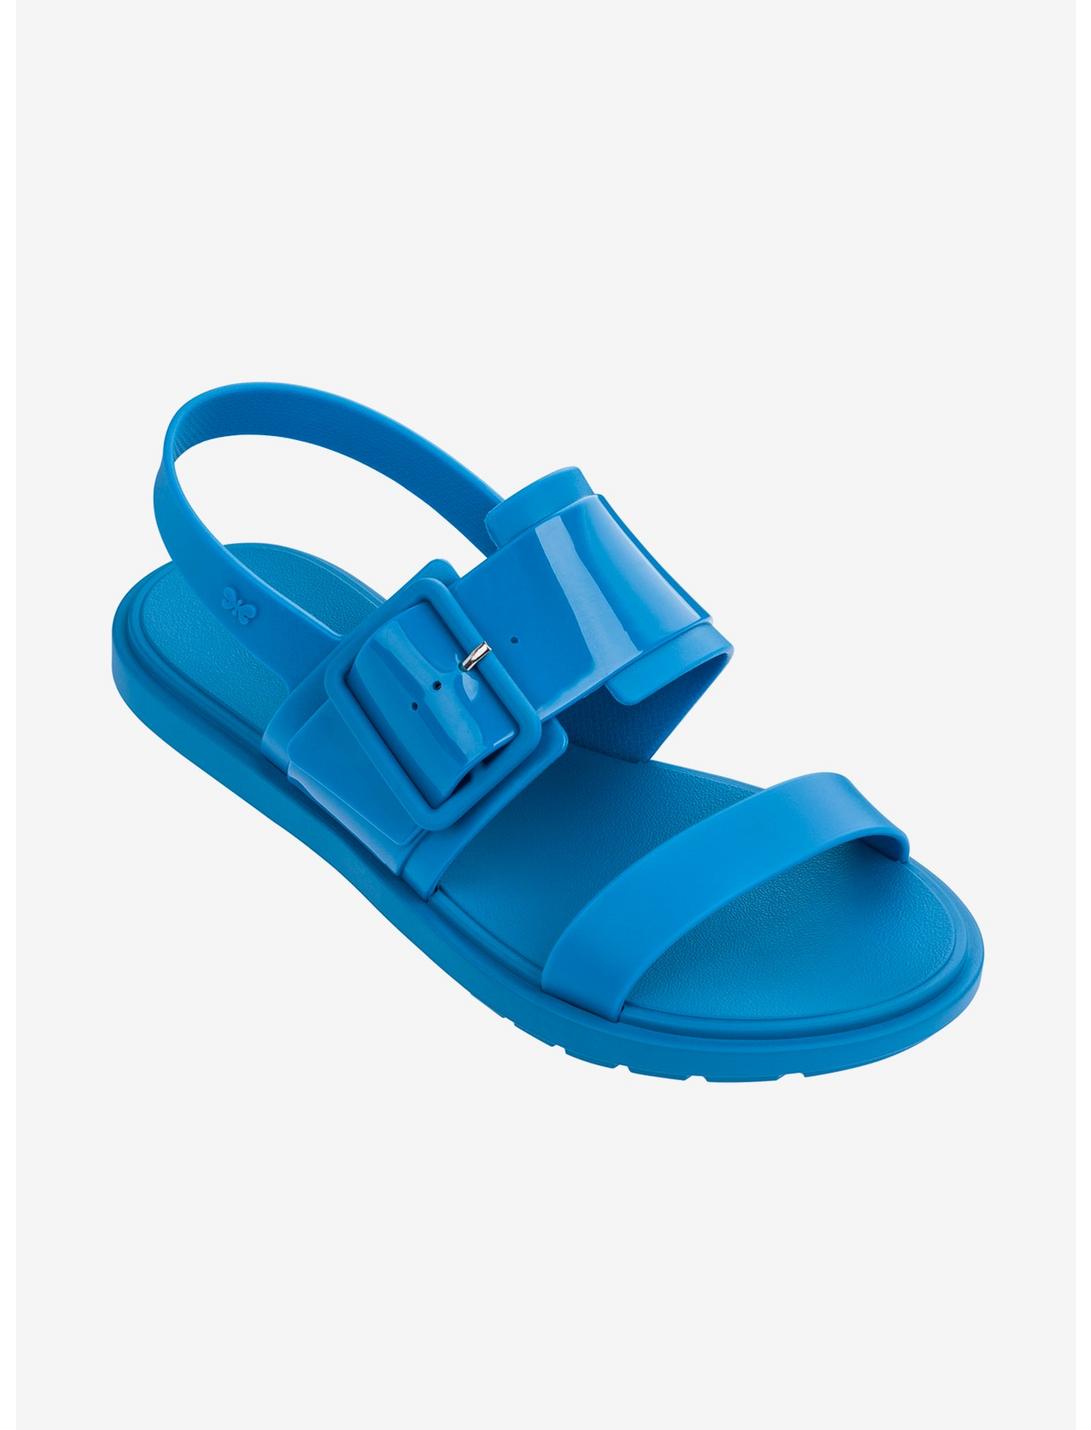 Blue Rush Sandal, BLUE, hi-res